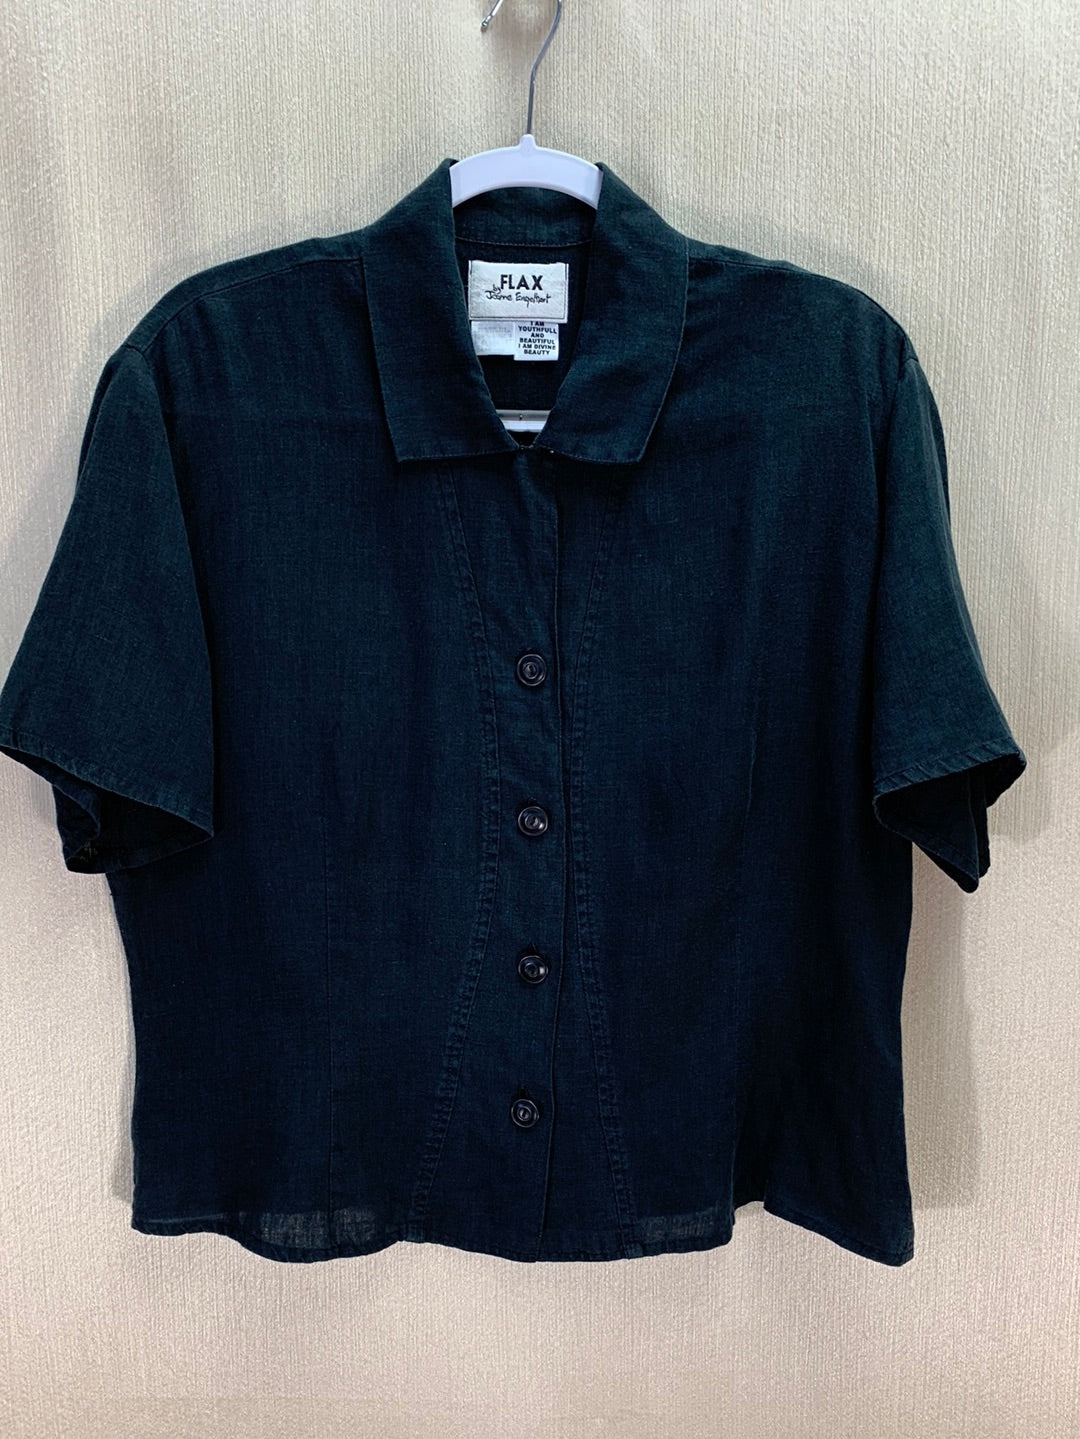 FLAX by Jeanne Engelhart Designs Green Linen Shirt Petite Blouse Button Up  Top